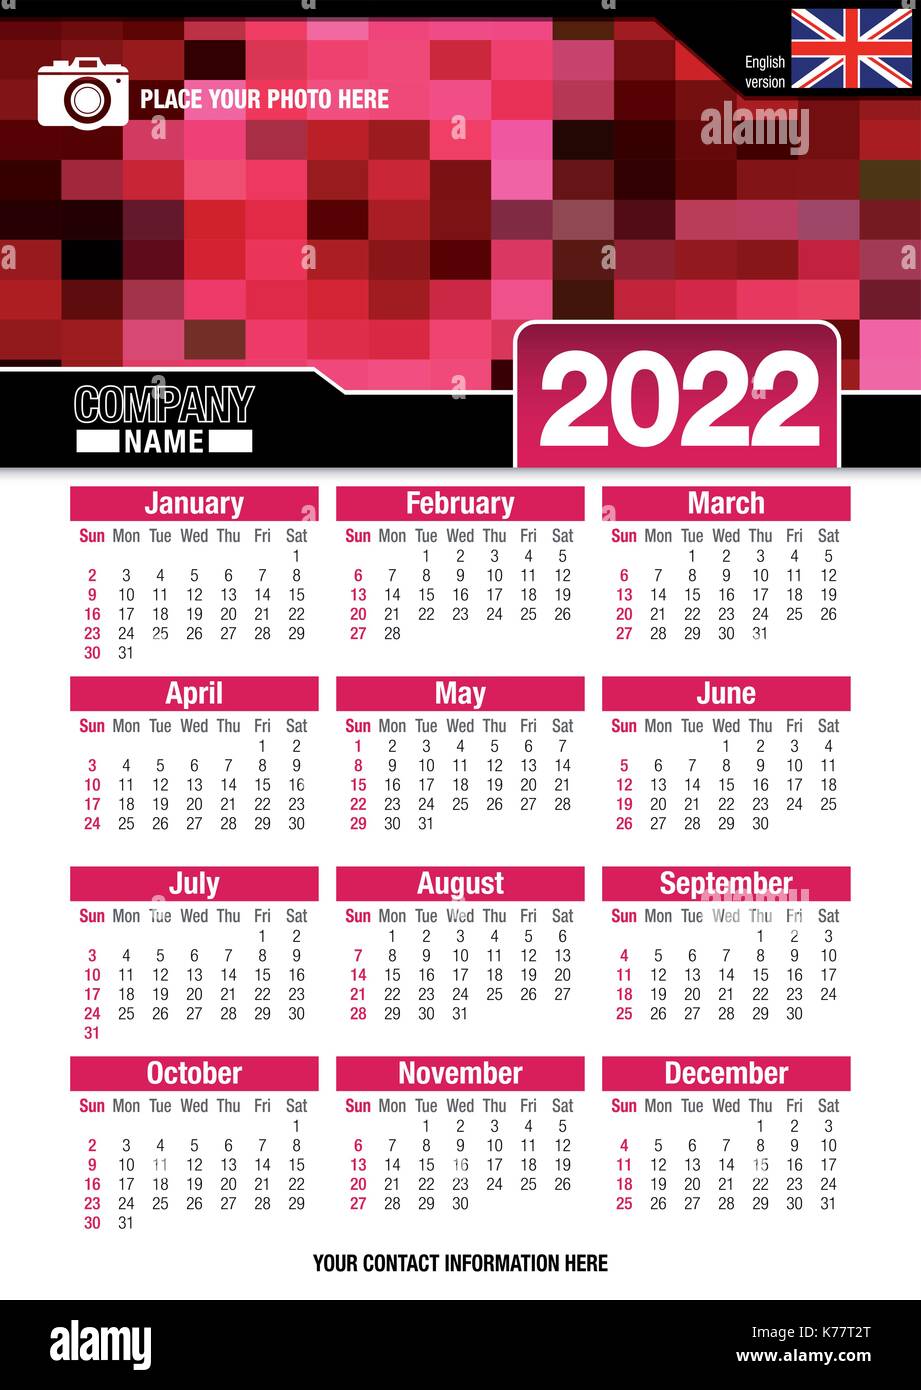 Utile calendario da parete 2022 con design di colori rosso mosaico. Formato A4 verticale. Dimensioni: 210mm x 297mm. Versione Inglese - immagine vettoriale Illustrazione Vettoriale